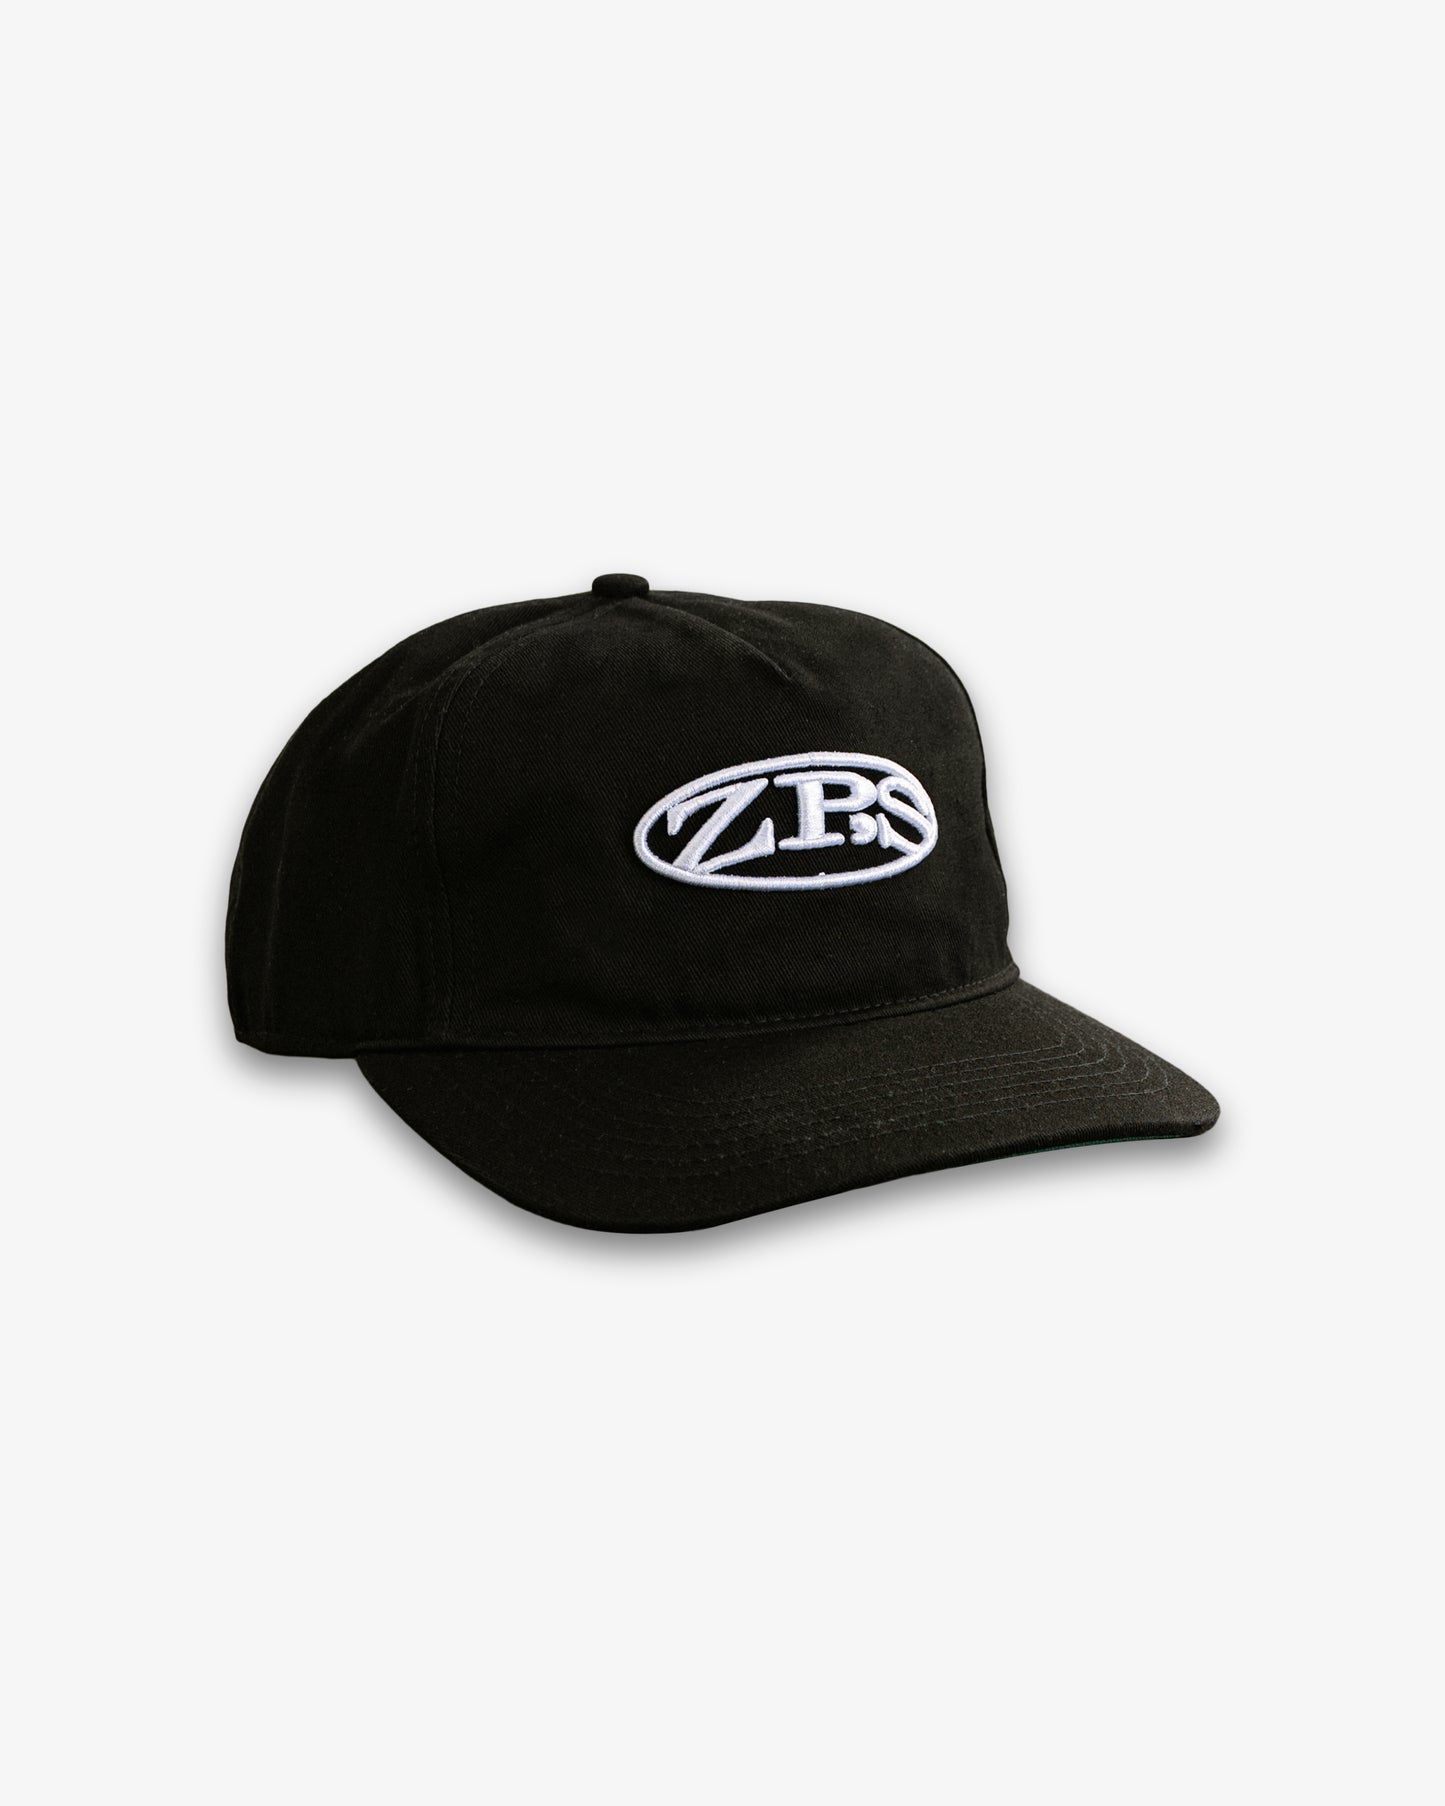 ZP'S BASEBALL CAP - BLACK